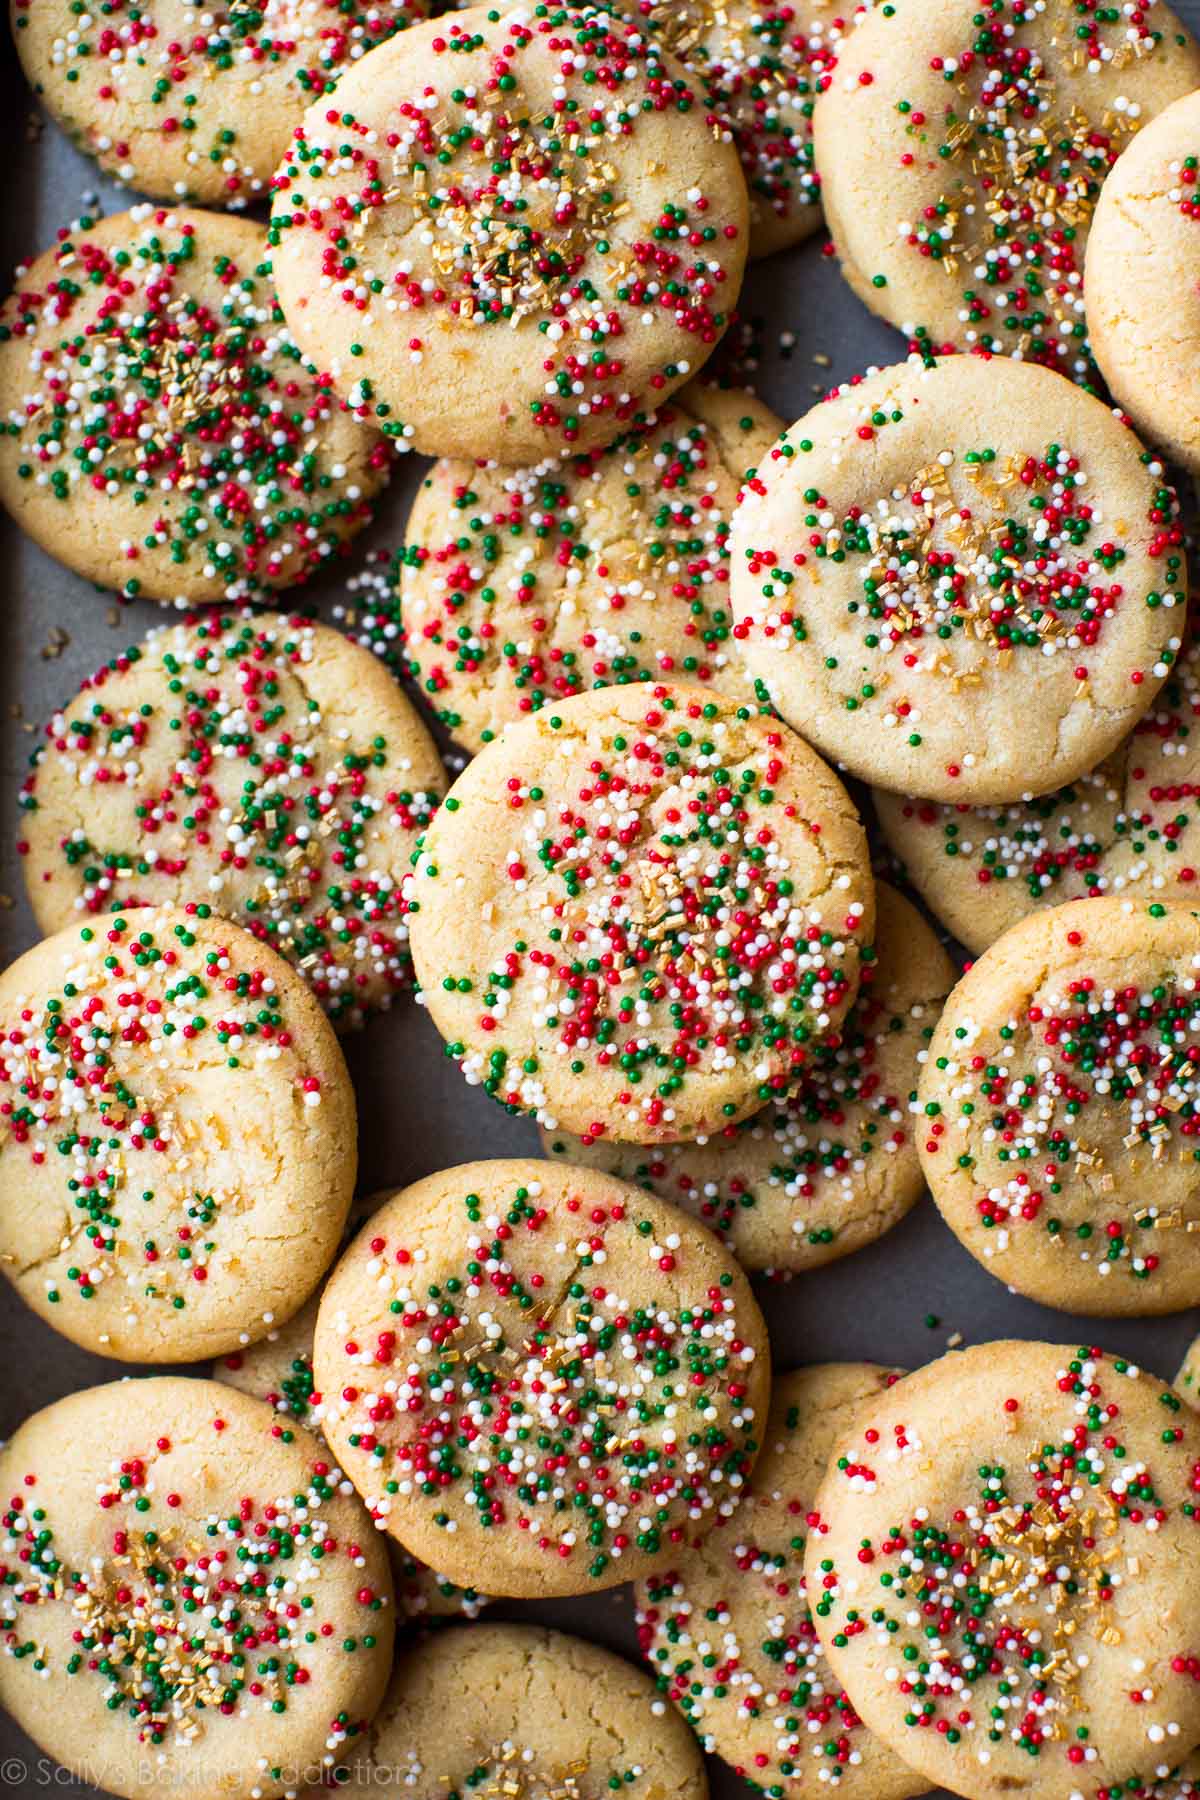 Vous voulez ajouter plus de saveur à vos biscuits au sucre? Faites plutôt des biscuits au sucre brun et au beurre. Ils sont faciles et prêts en moins d'une heure! Recette sur sallysbakingaddiction.com